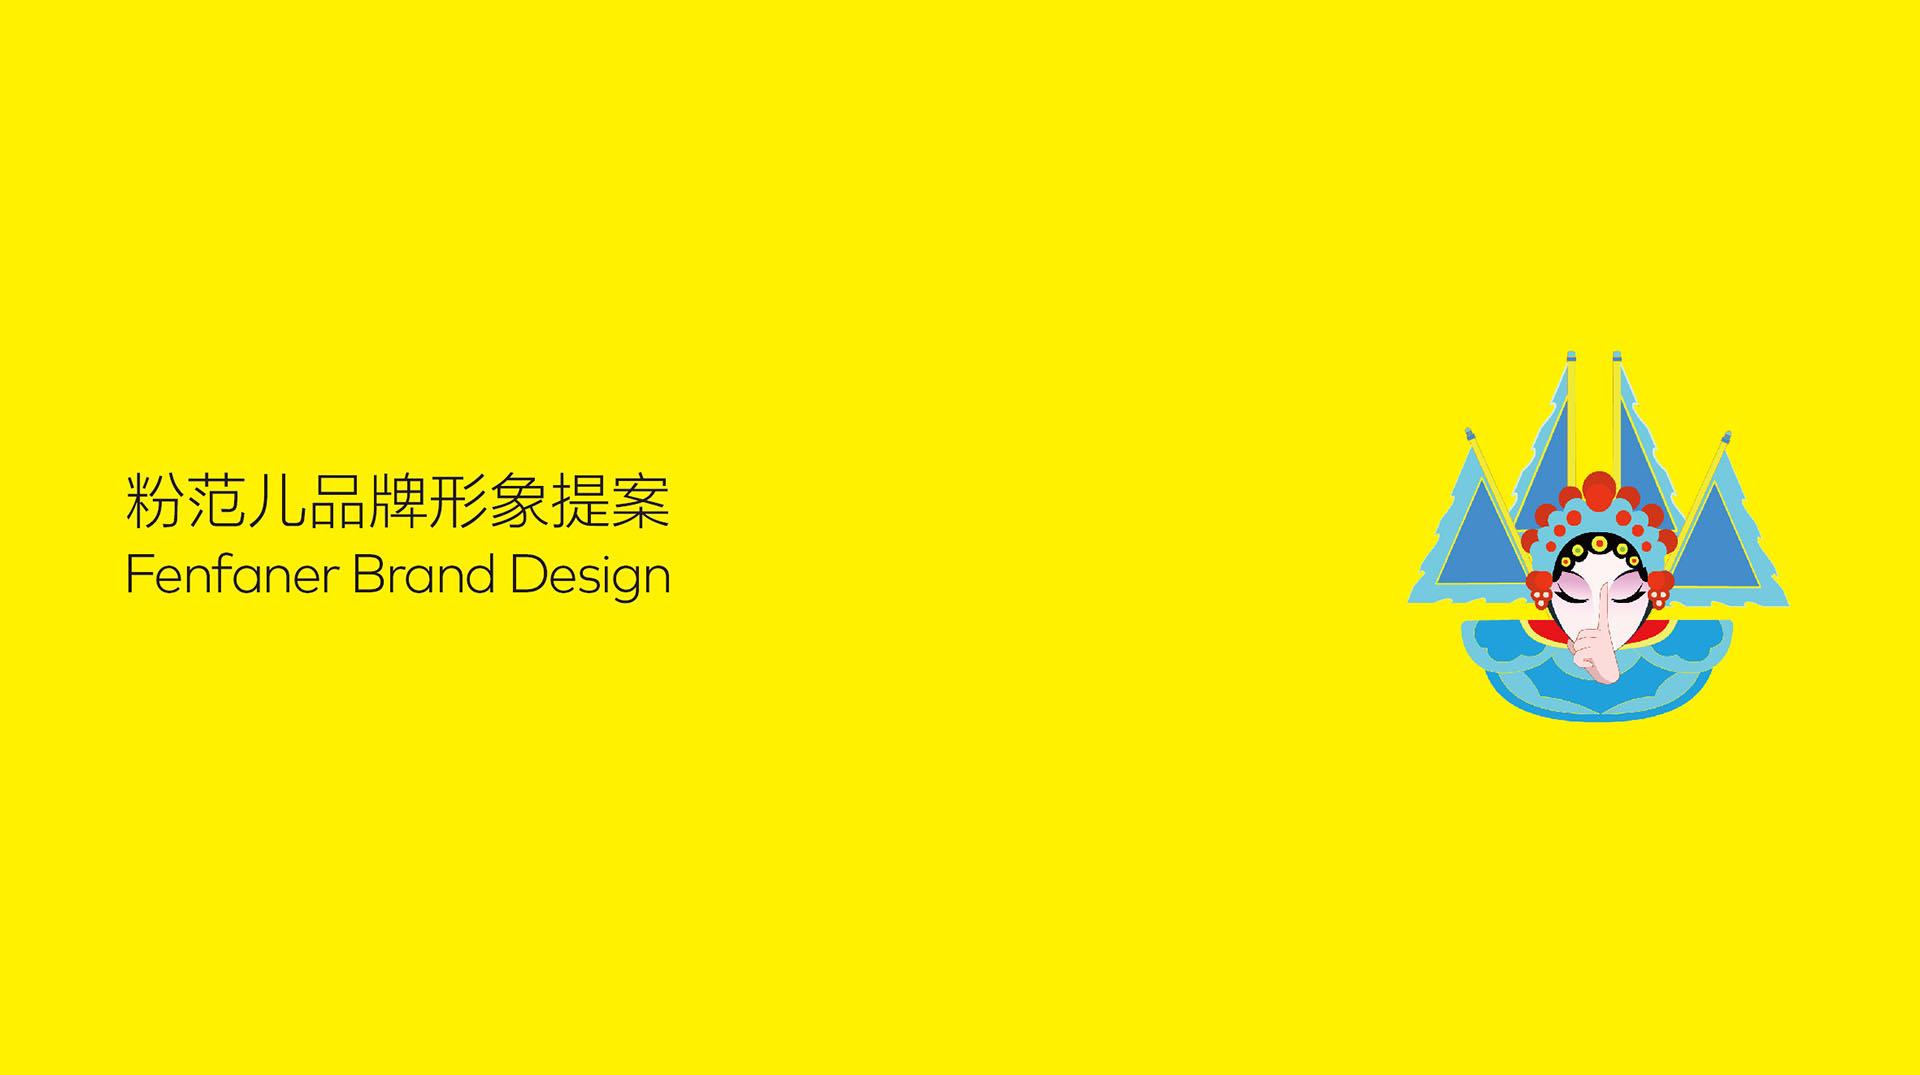 深圳粉范儿雅米餐饮品牌logo设计作品欣赏